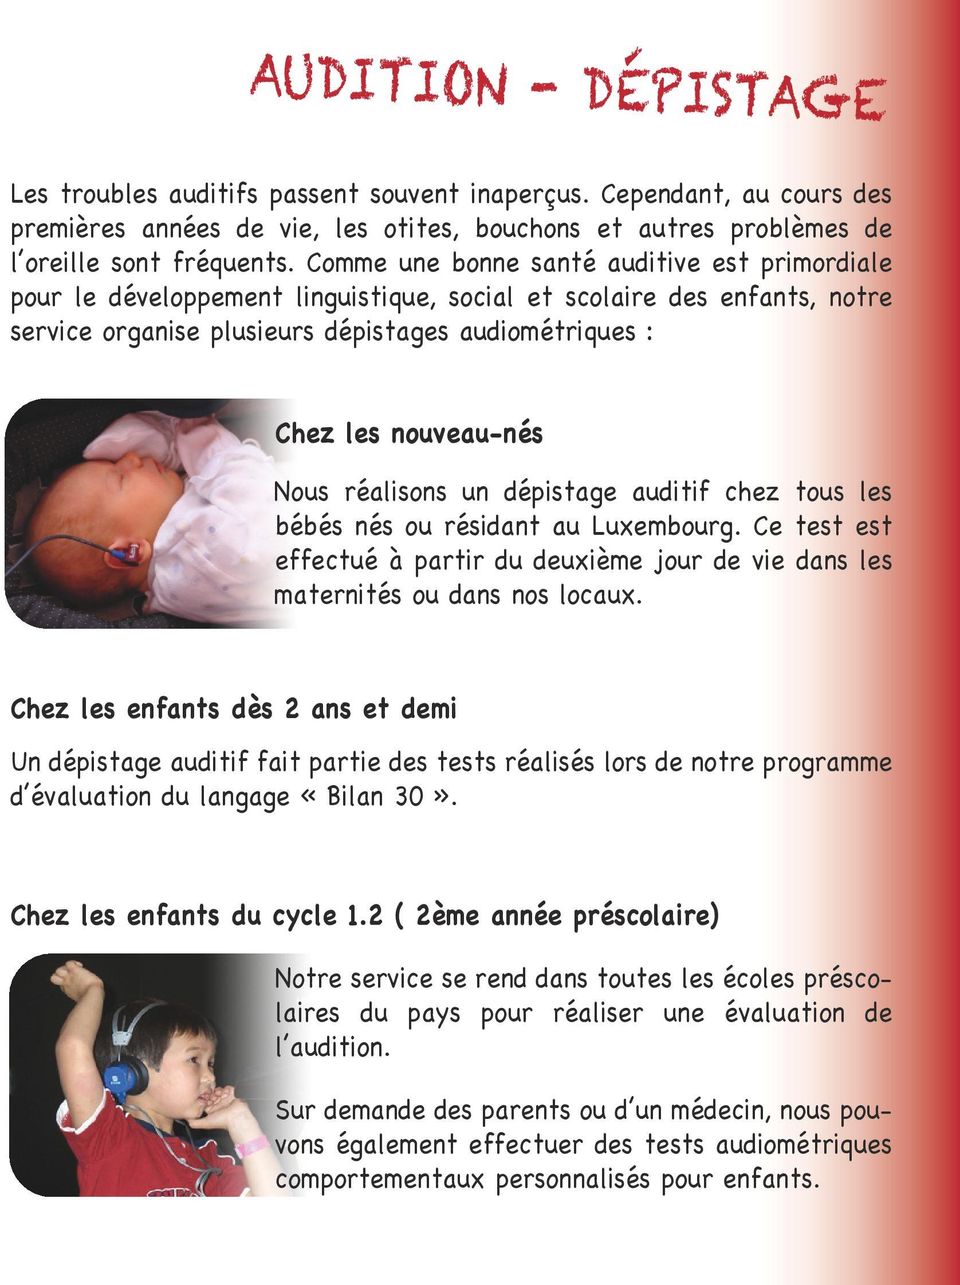 Nous réalisons un dépistage auditif chez tous les bébés nés ou résidant au Luxembourg. Ce test est effectué à partir du deuxième jour de vie dans les maternités ou dans nos locaux.